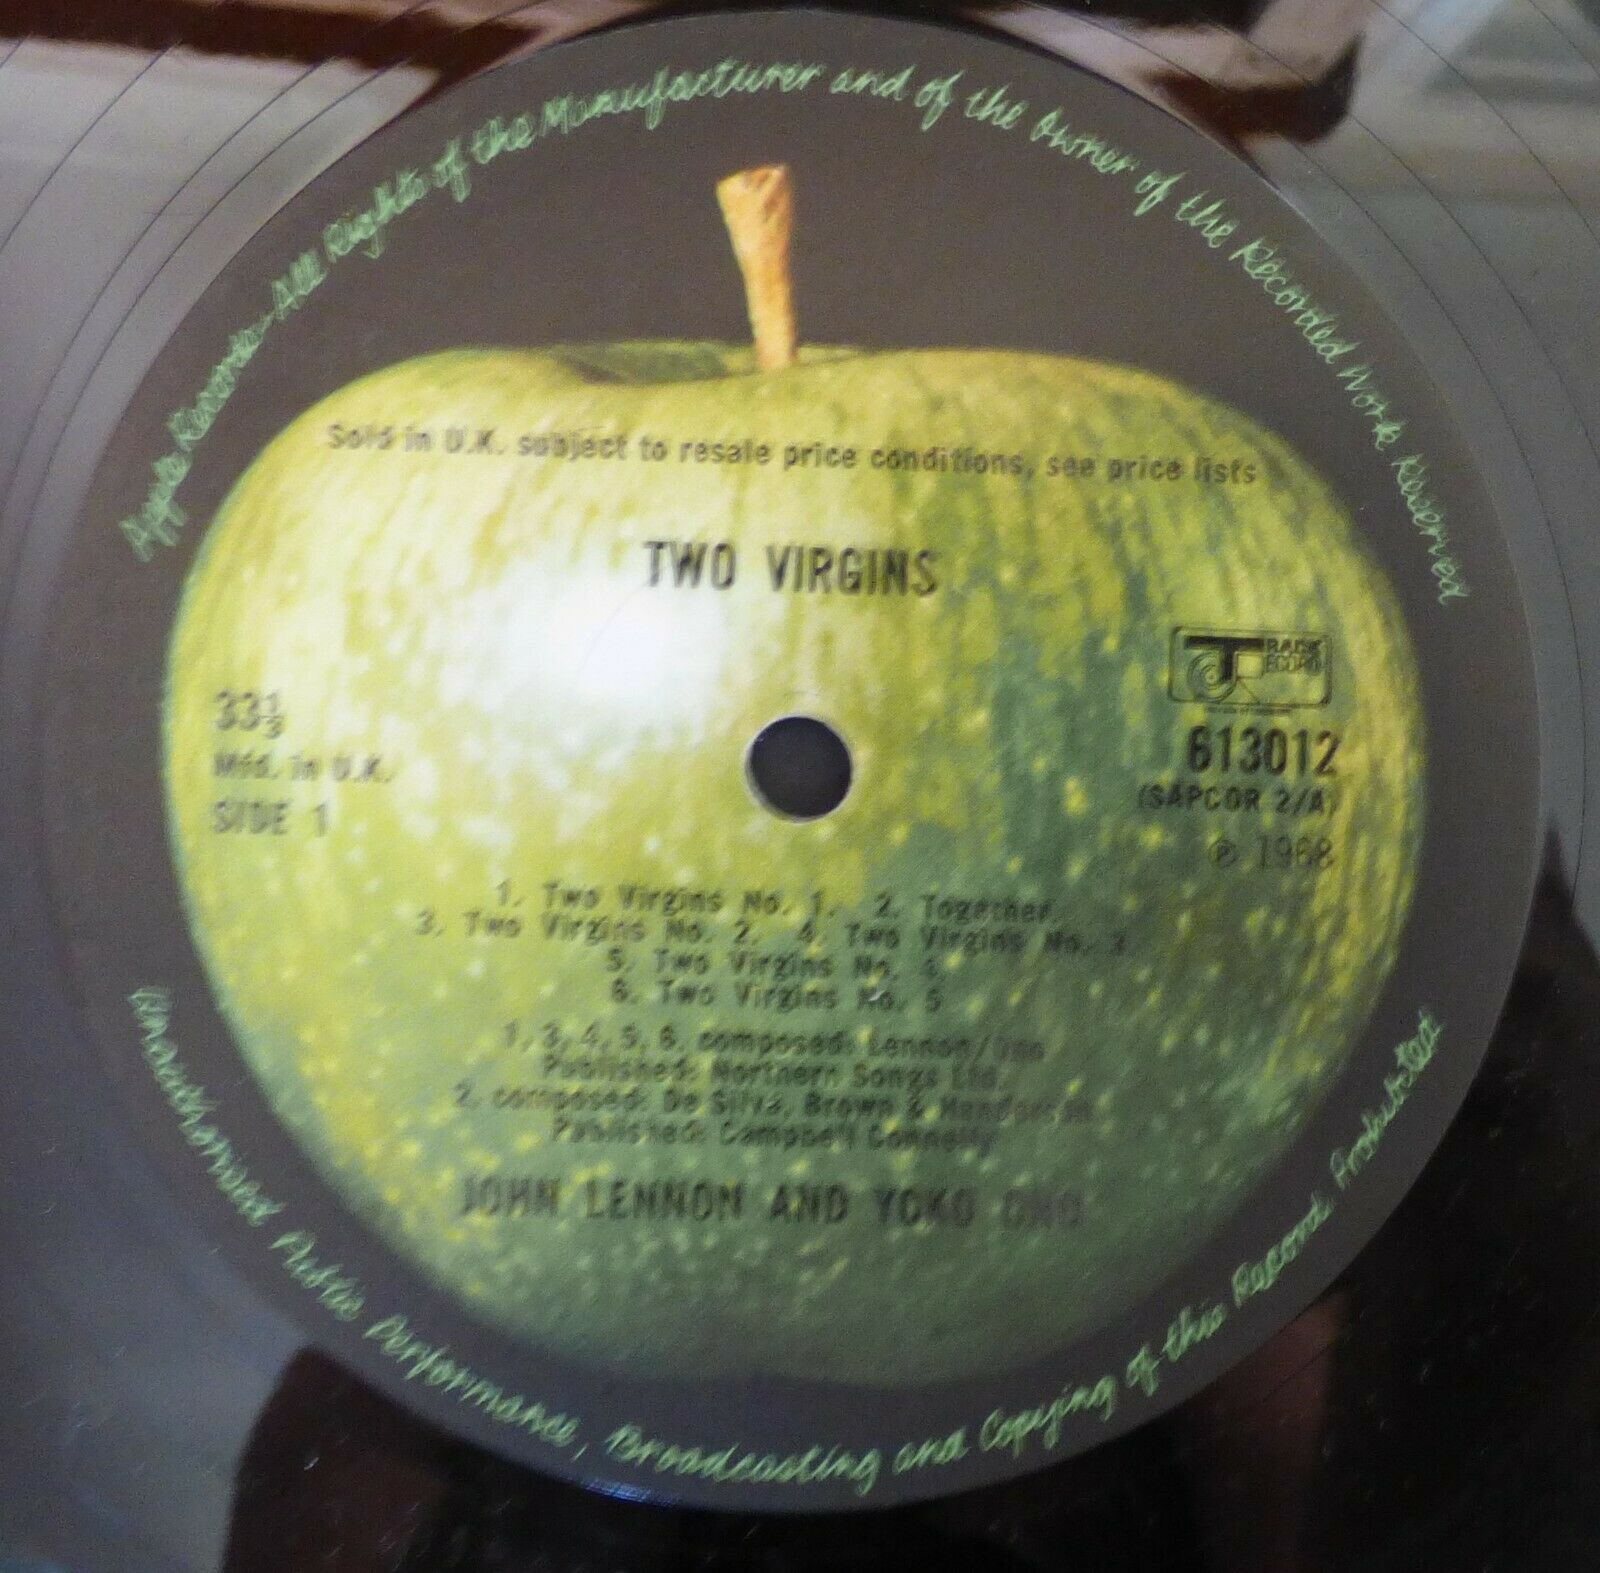 Pic 3 John Lennon & Yoko Ono - Two Virgins 1968 1st Issue Stereo Track/Apple SAPCOR 2